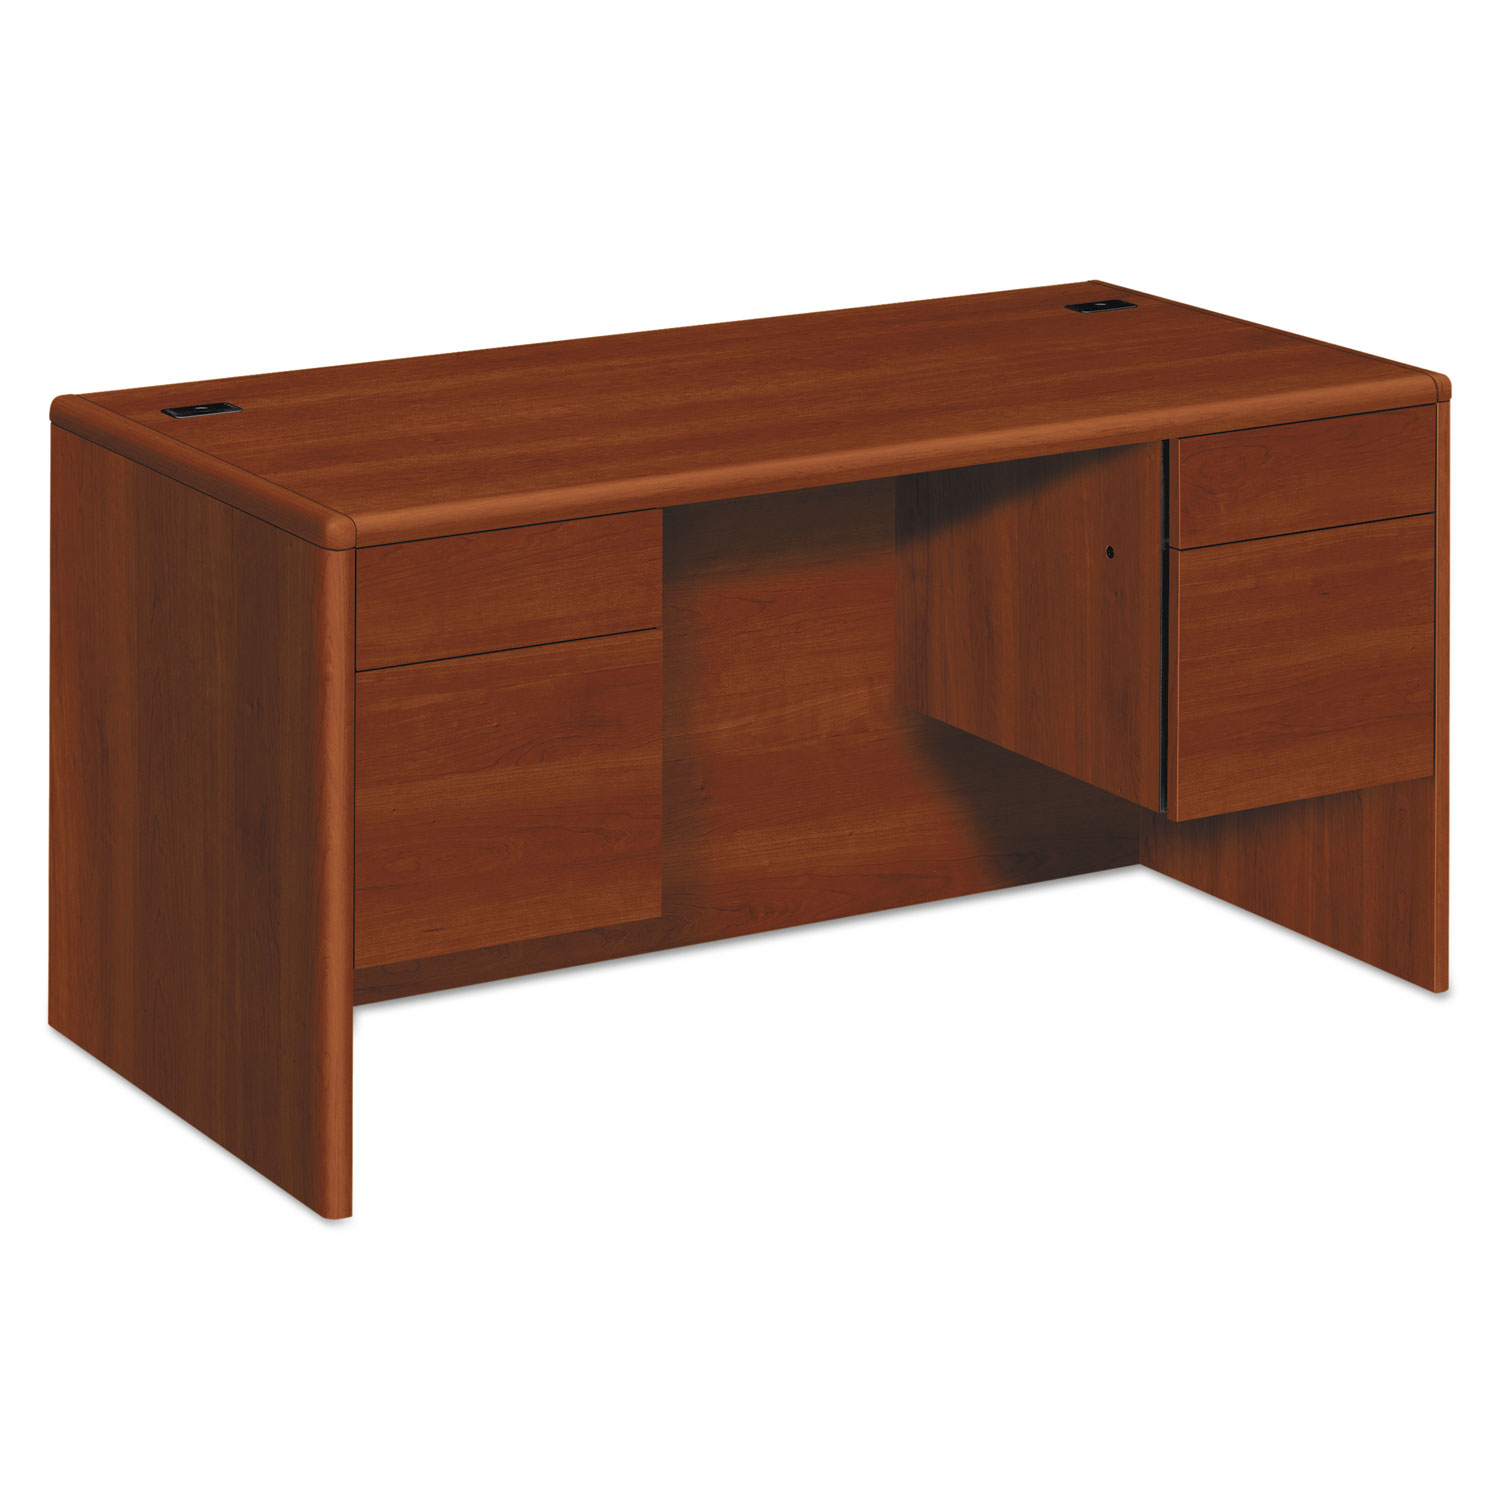  HON H10771.COGNCOGN 10700 Series Desk, 3/4 Height Double Pedestals, 60w x 30d x 29.5h, Cognac (HON10771CO) 